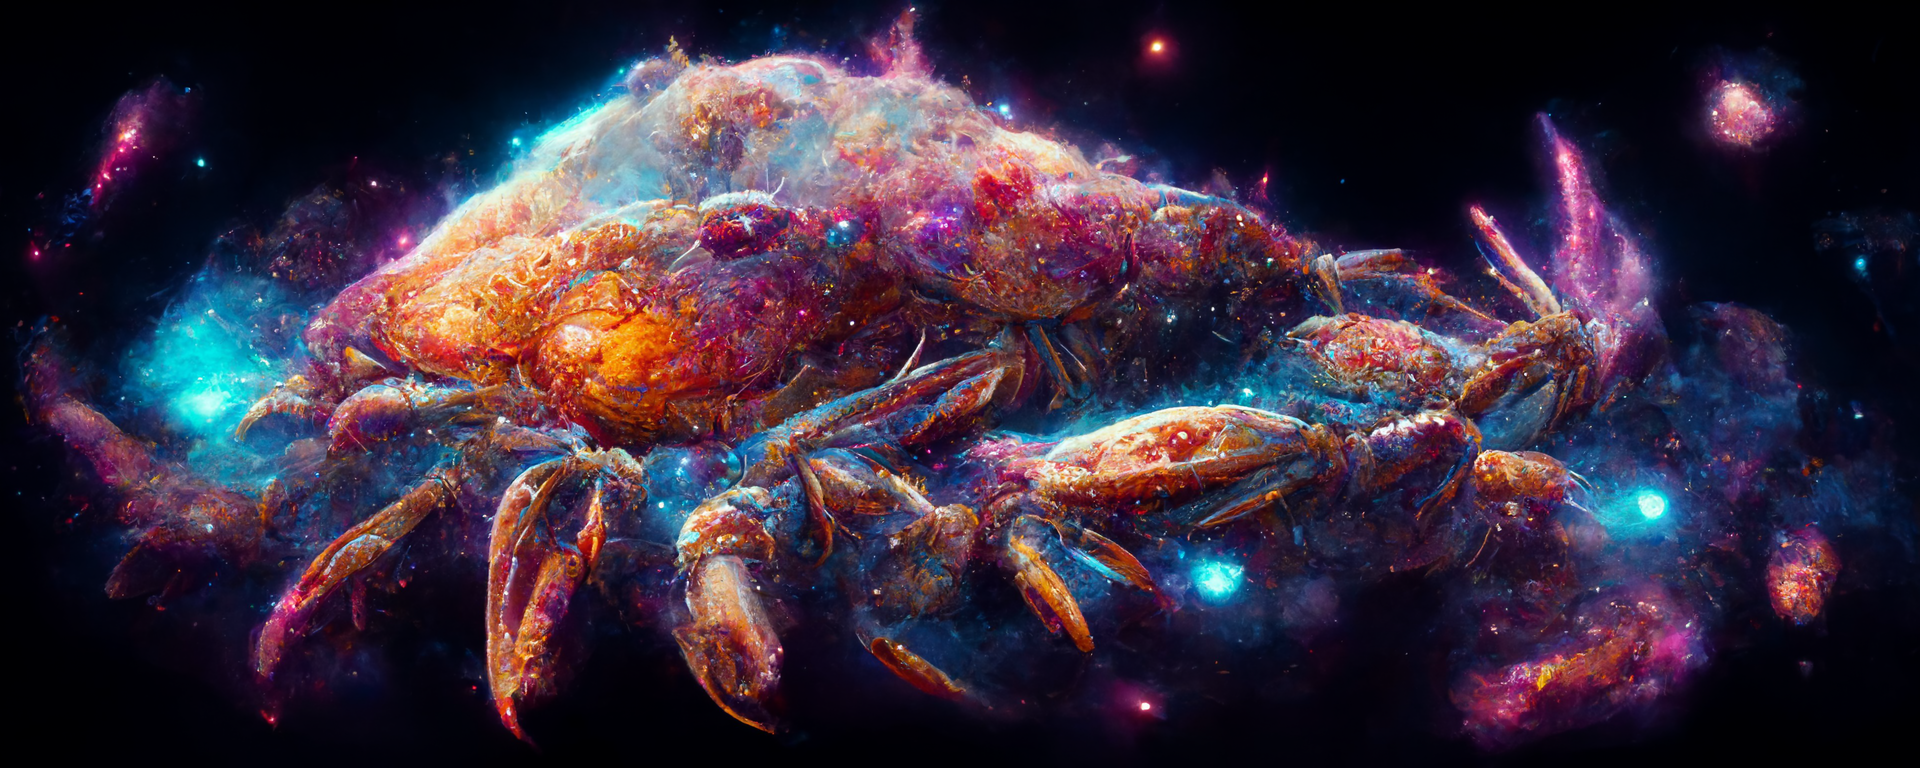 Sci Fi Nebula Art by Temposhot